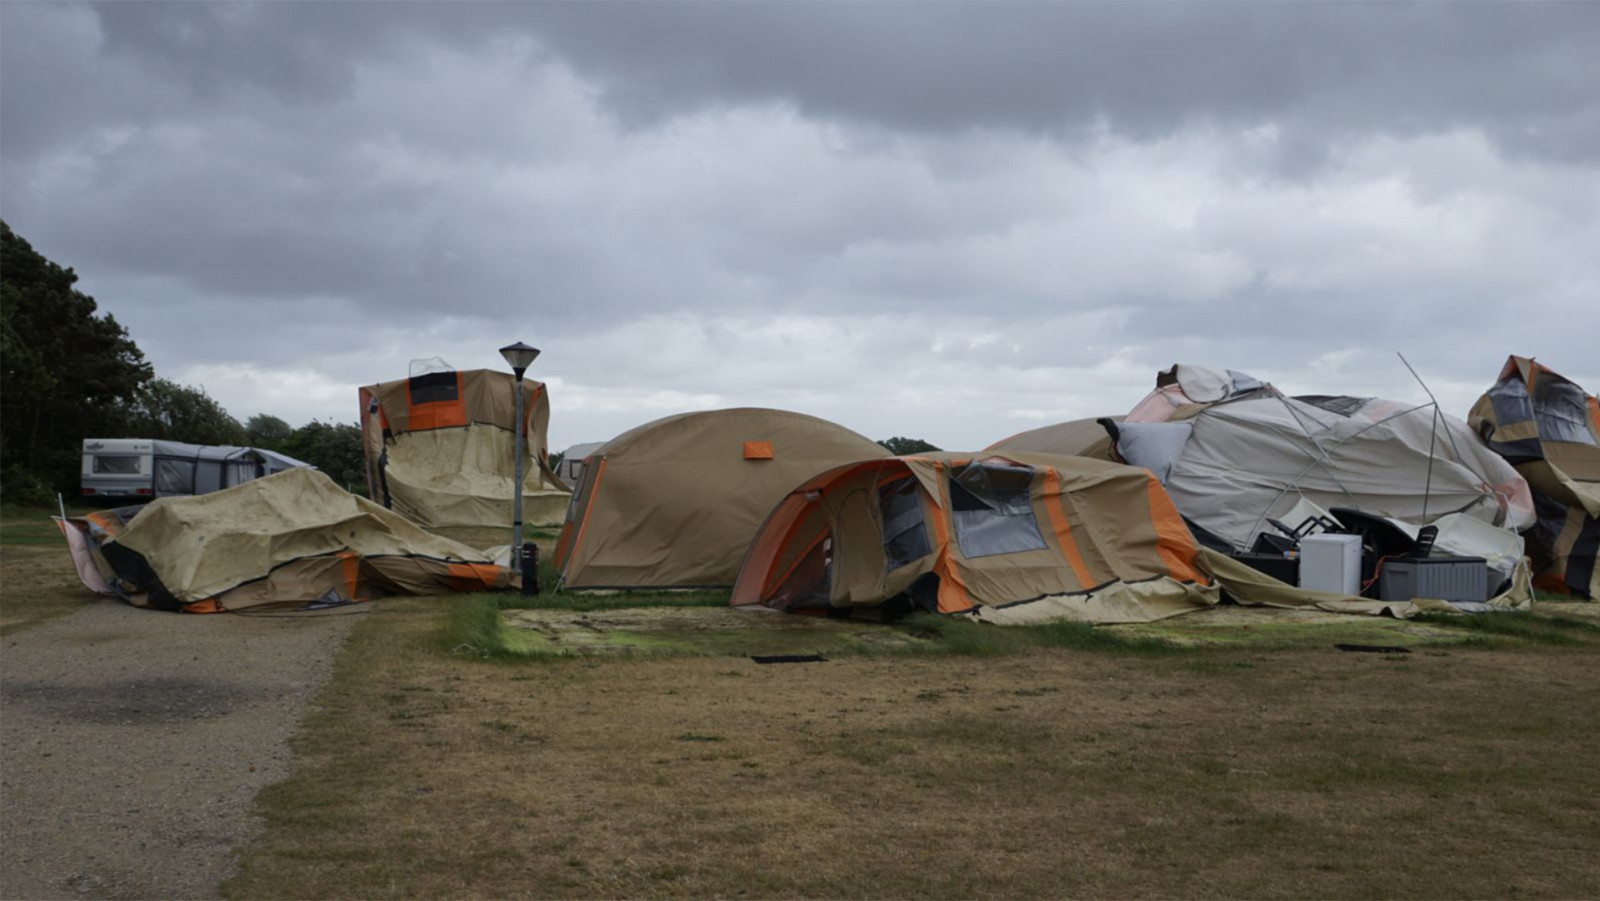 snorkel Rally debat Zomerstorm laat ravage achter op camping Julianadorp - NH Nieuws